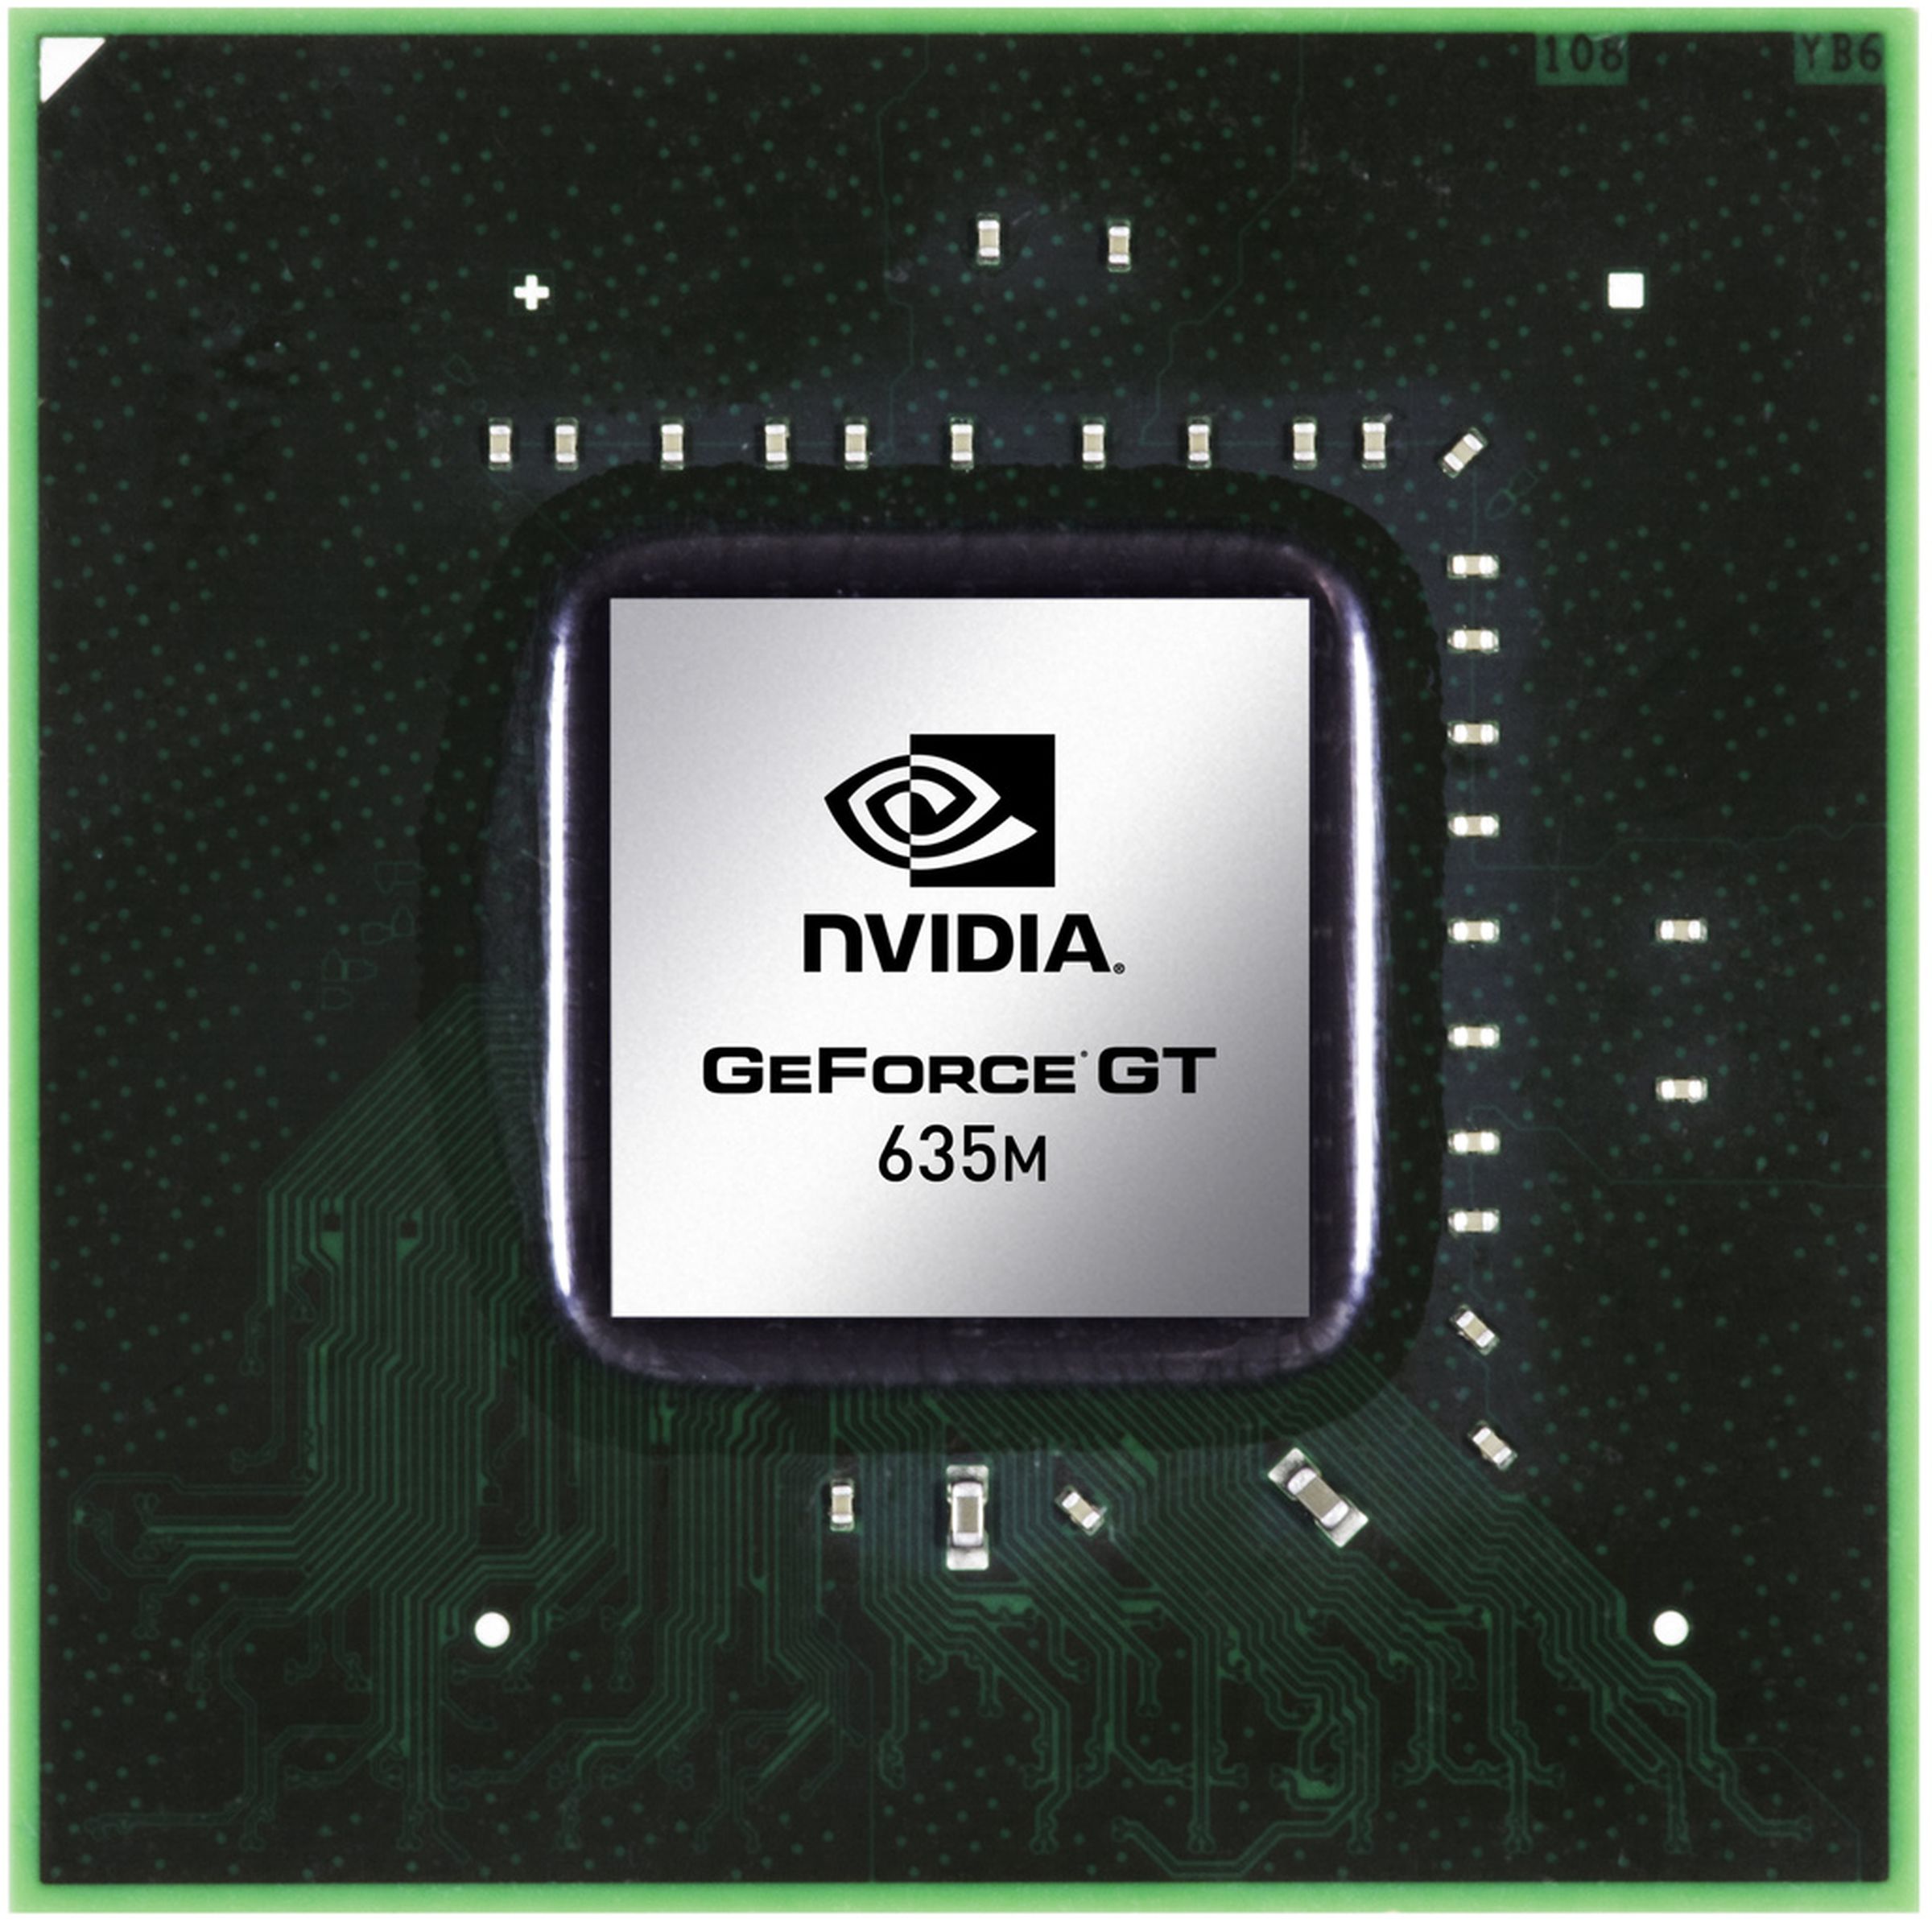 Nvidia GeForce 600M series die pictures